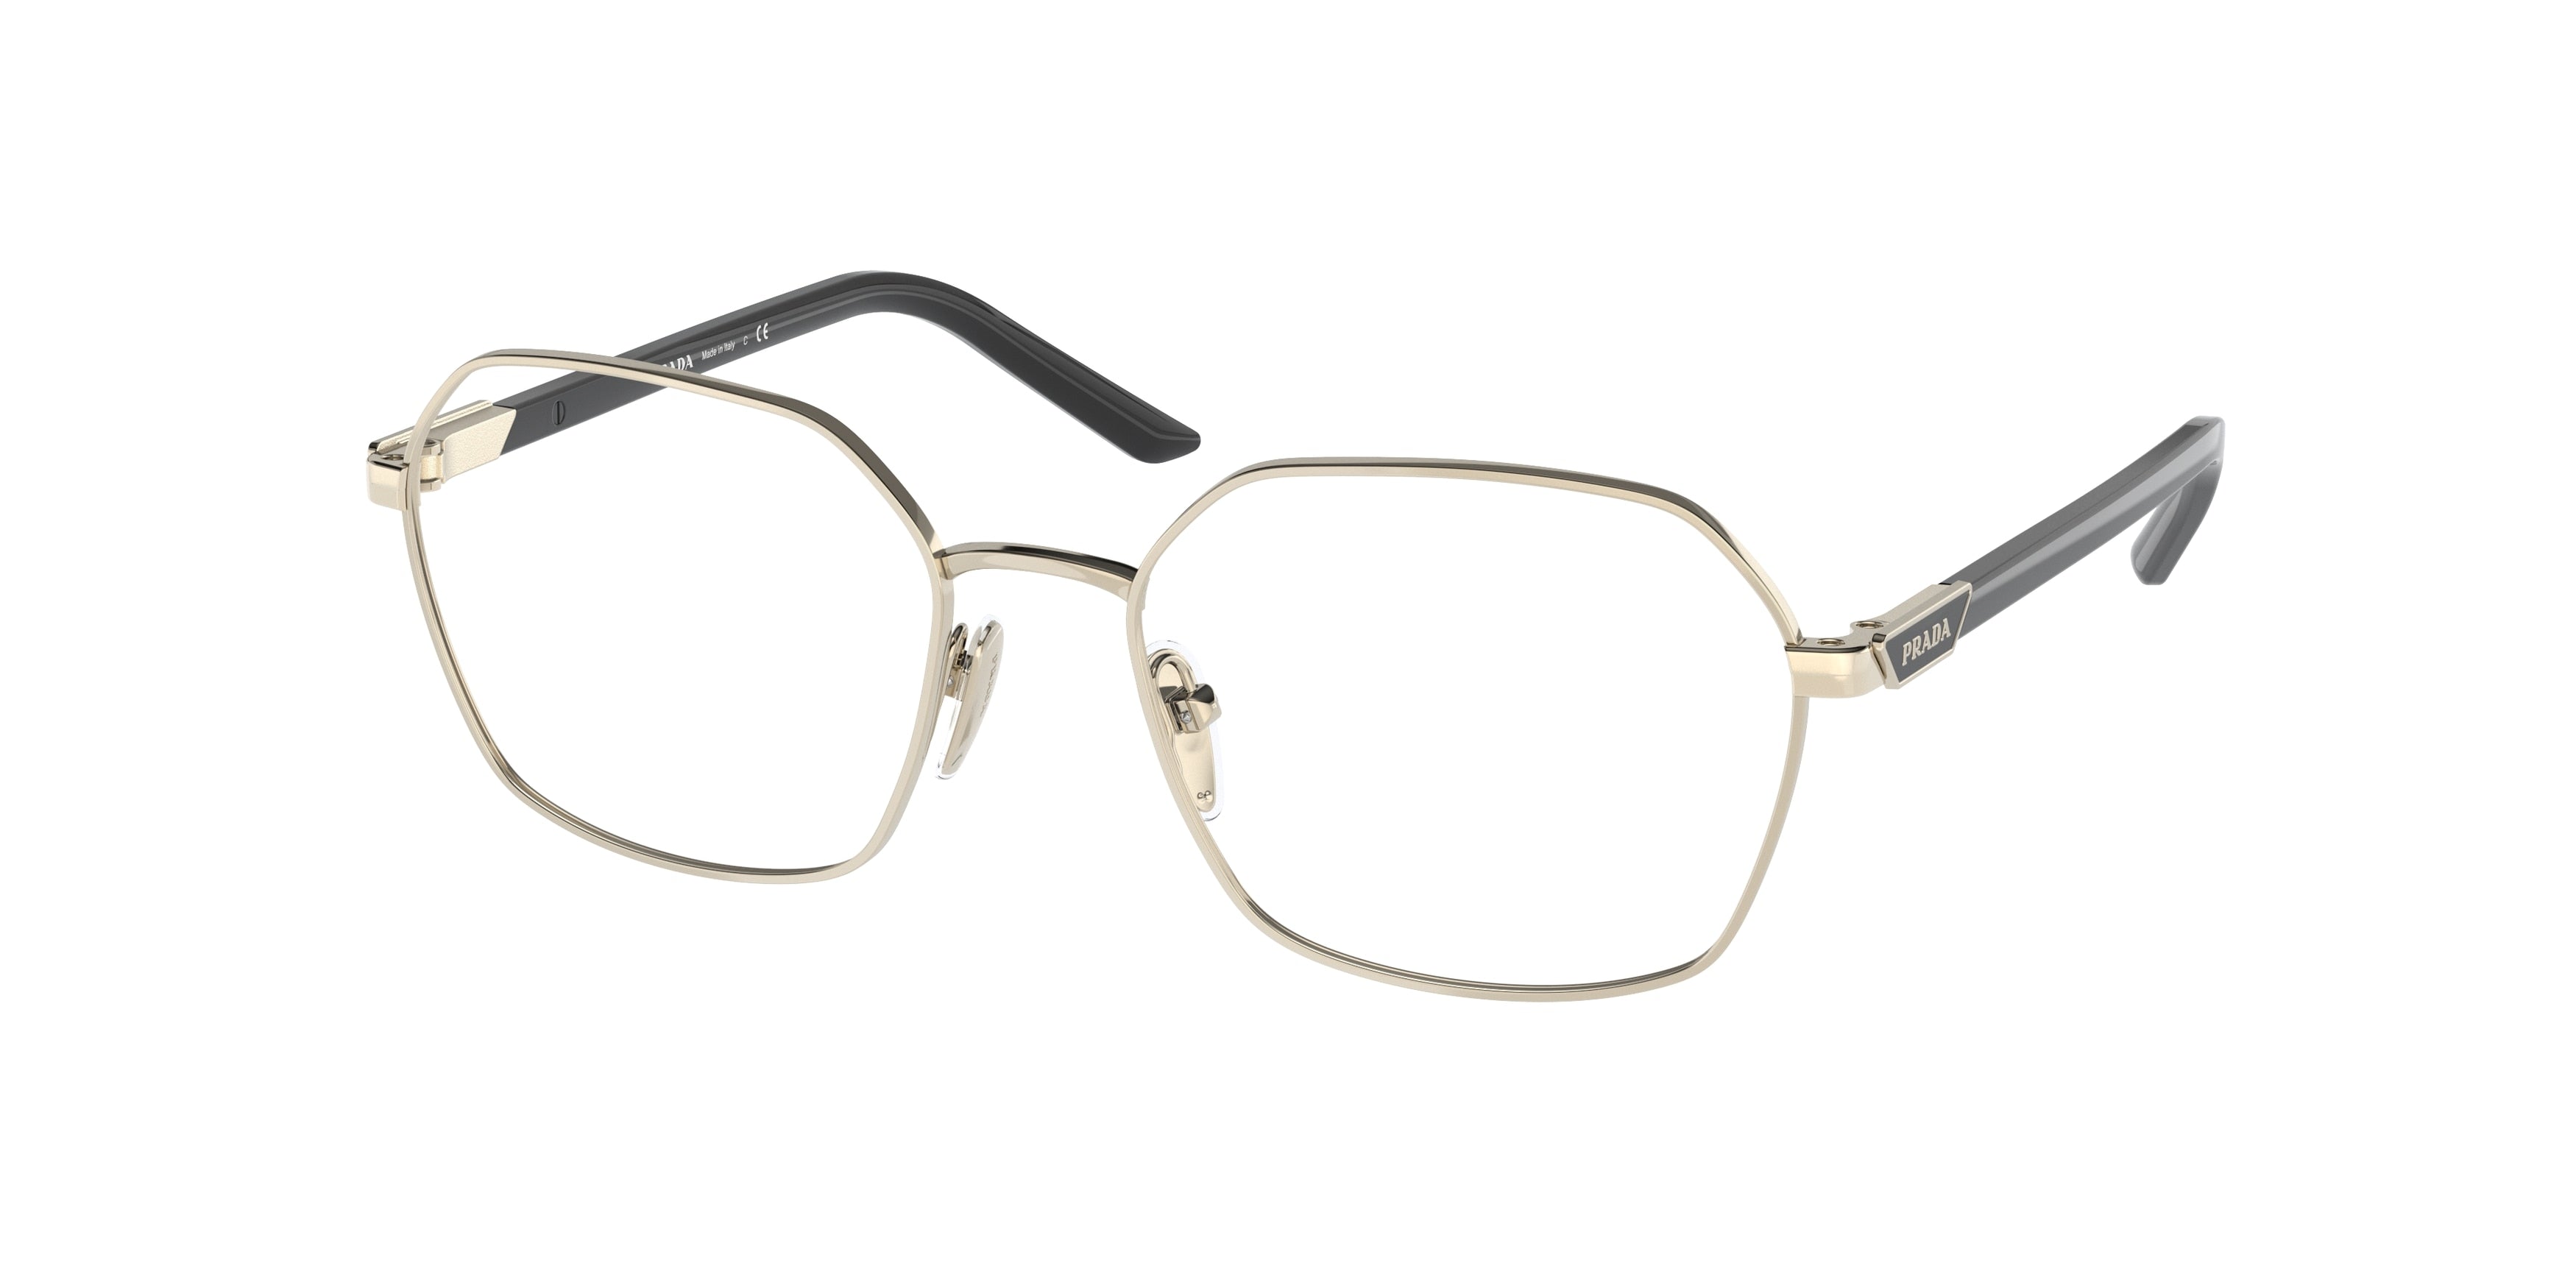 Prada PR55YV Square Eyeglasses  ZVN1O1-Pale Gold 52-135-17 - Color Map Gold